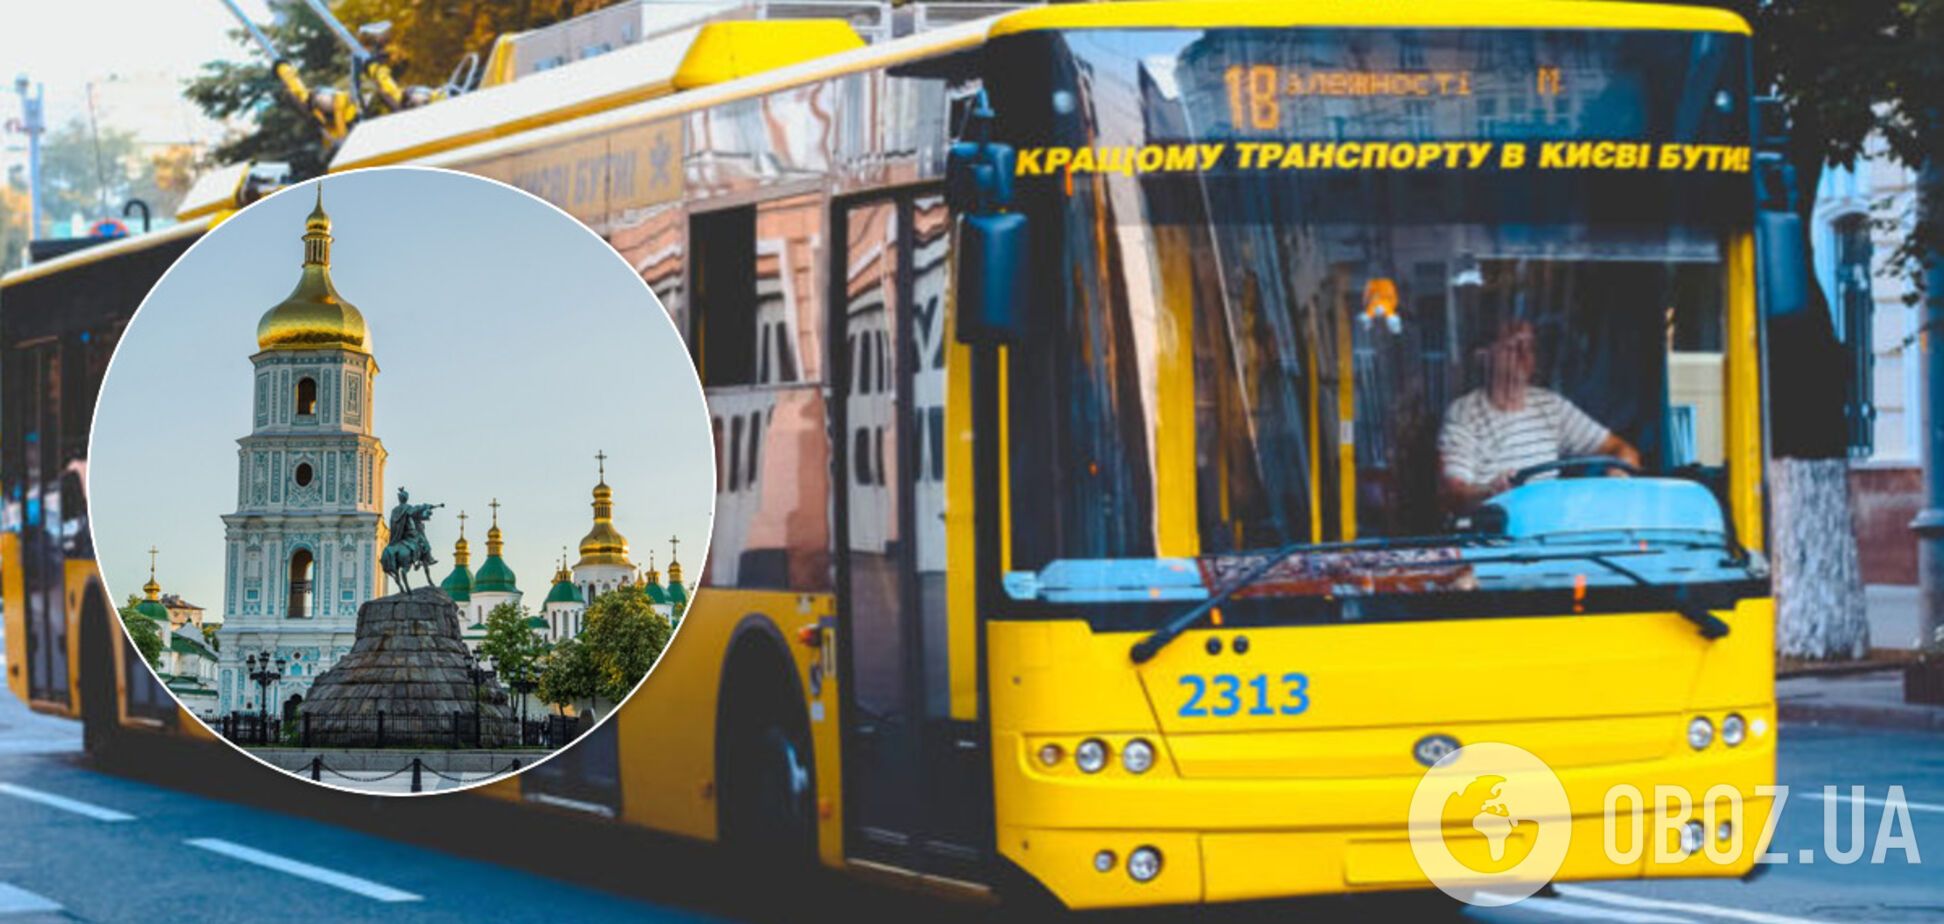 Общественный транспорт в Киеве. Иллюстрация